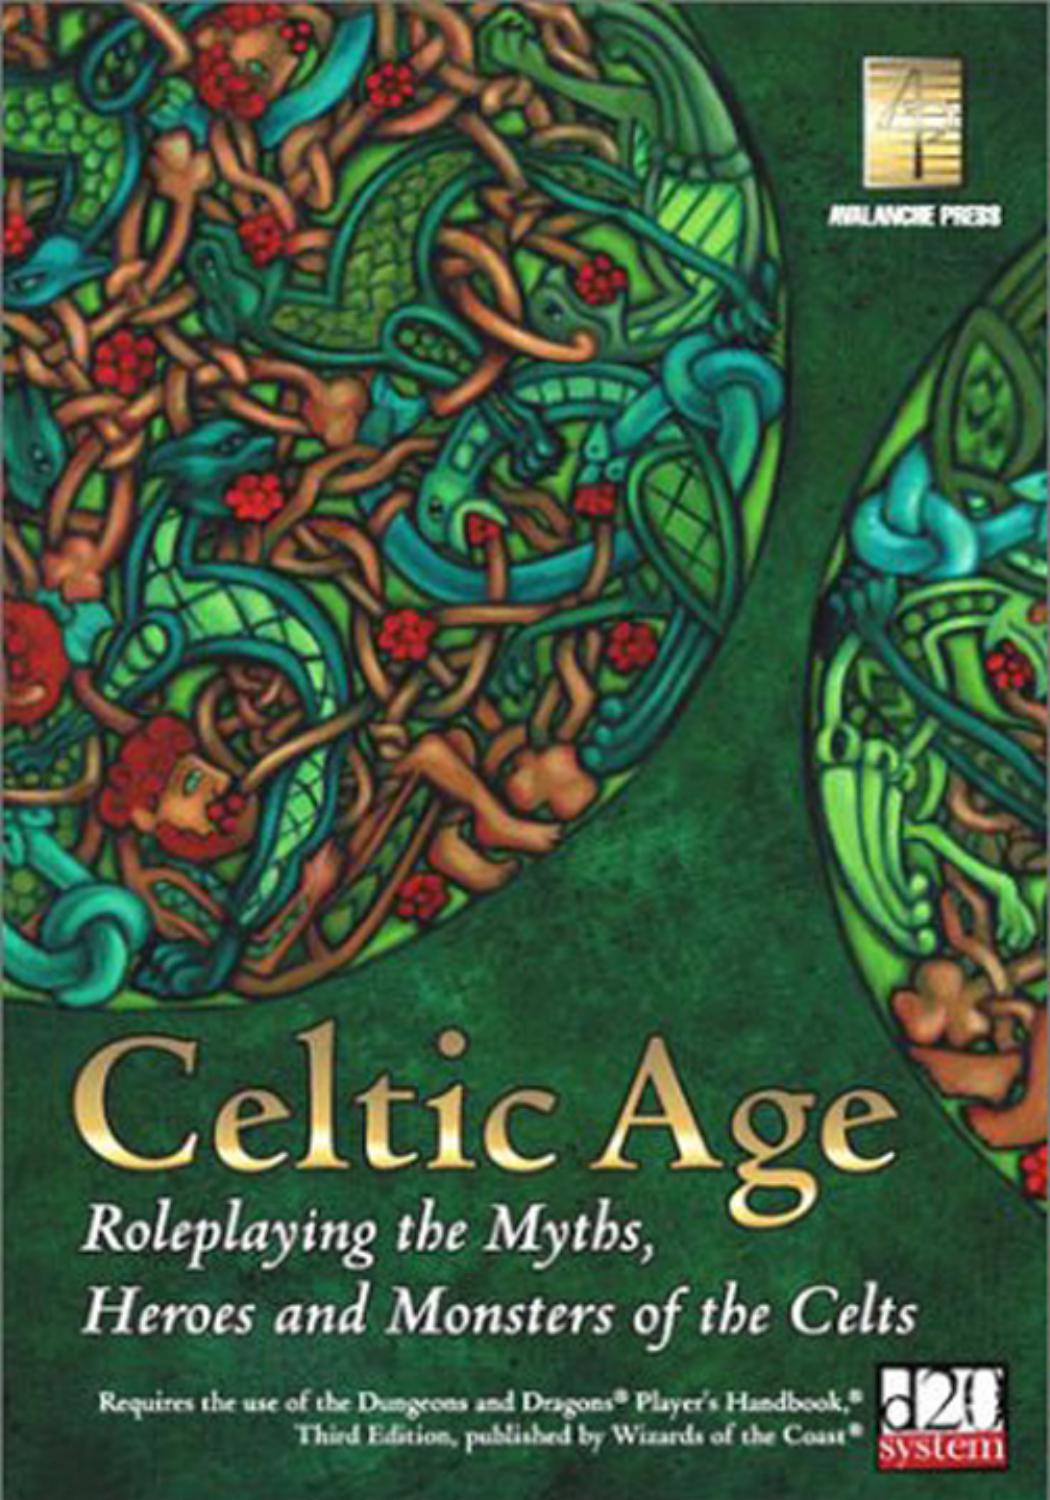 D20 Celtic Age